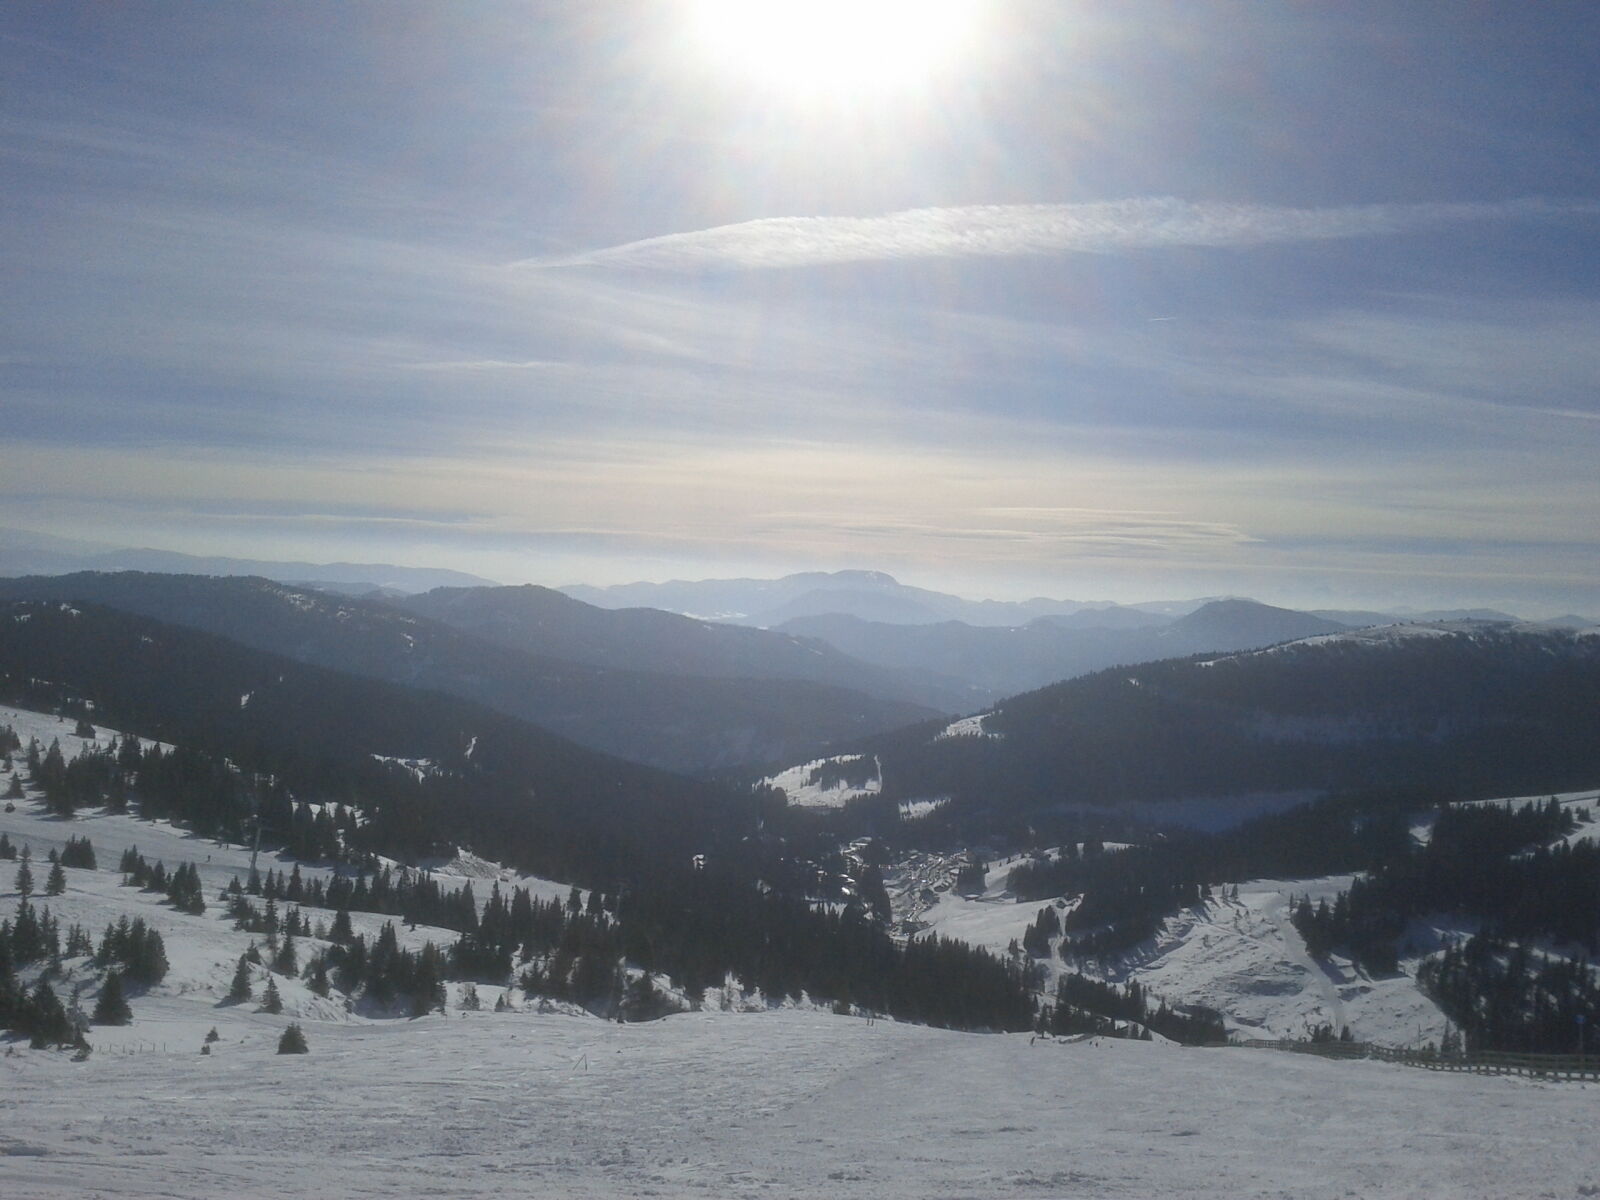 Google Nexus S sample photo. Austria, lachtal, landscape, snow photography